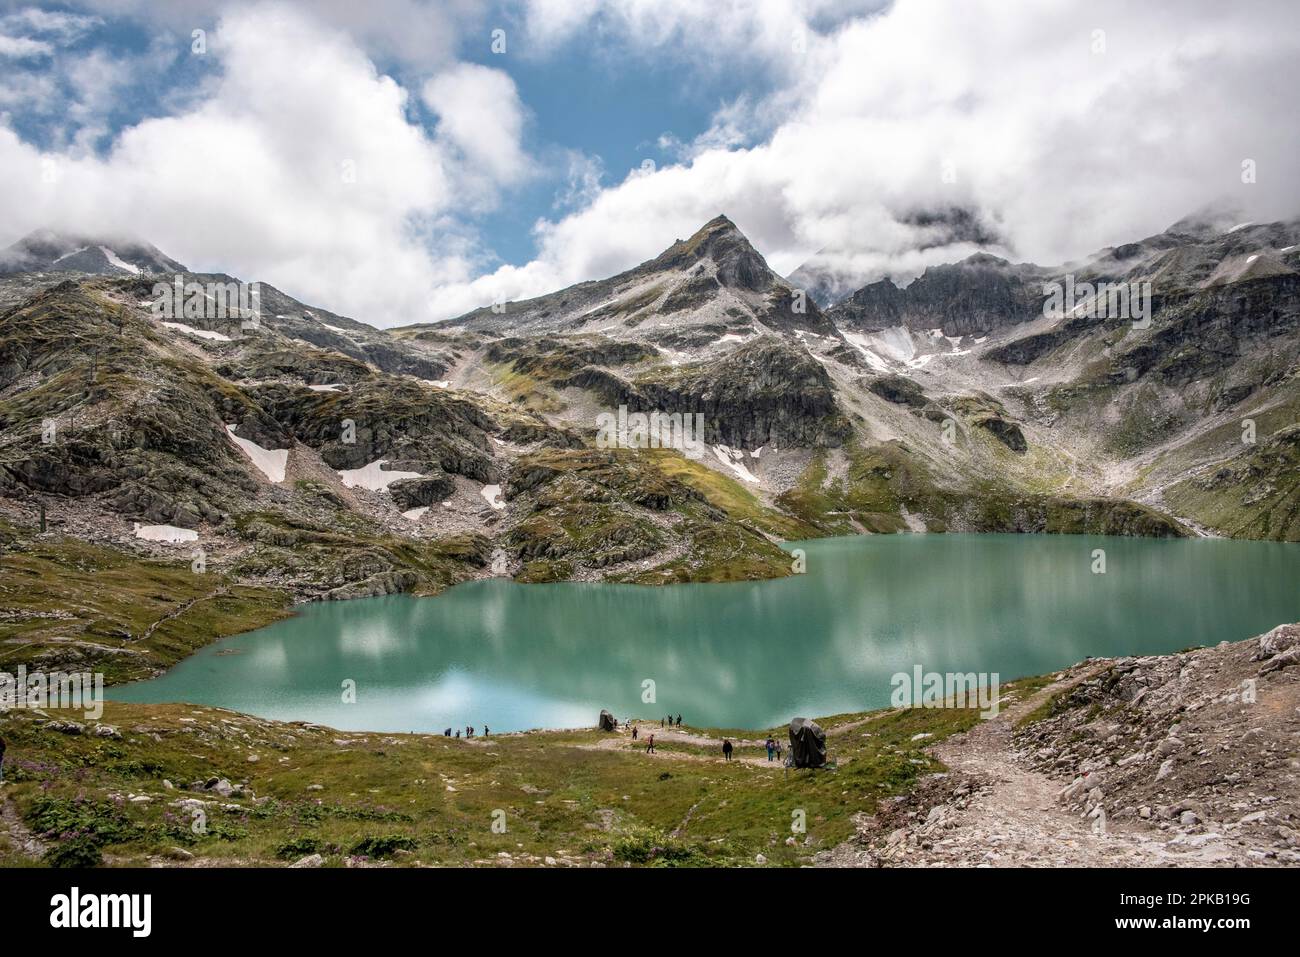 Belle photographie du lac Weisssee dans le parc national de High Tauern près de Kaprun, Autriche Banque D'Images